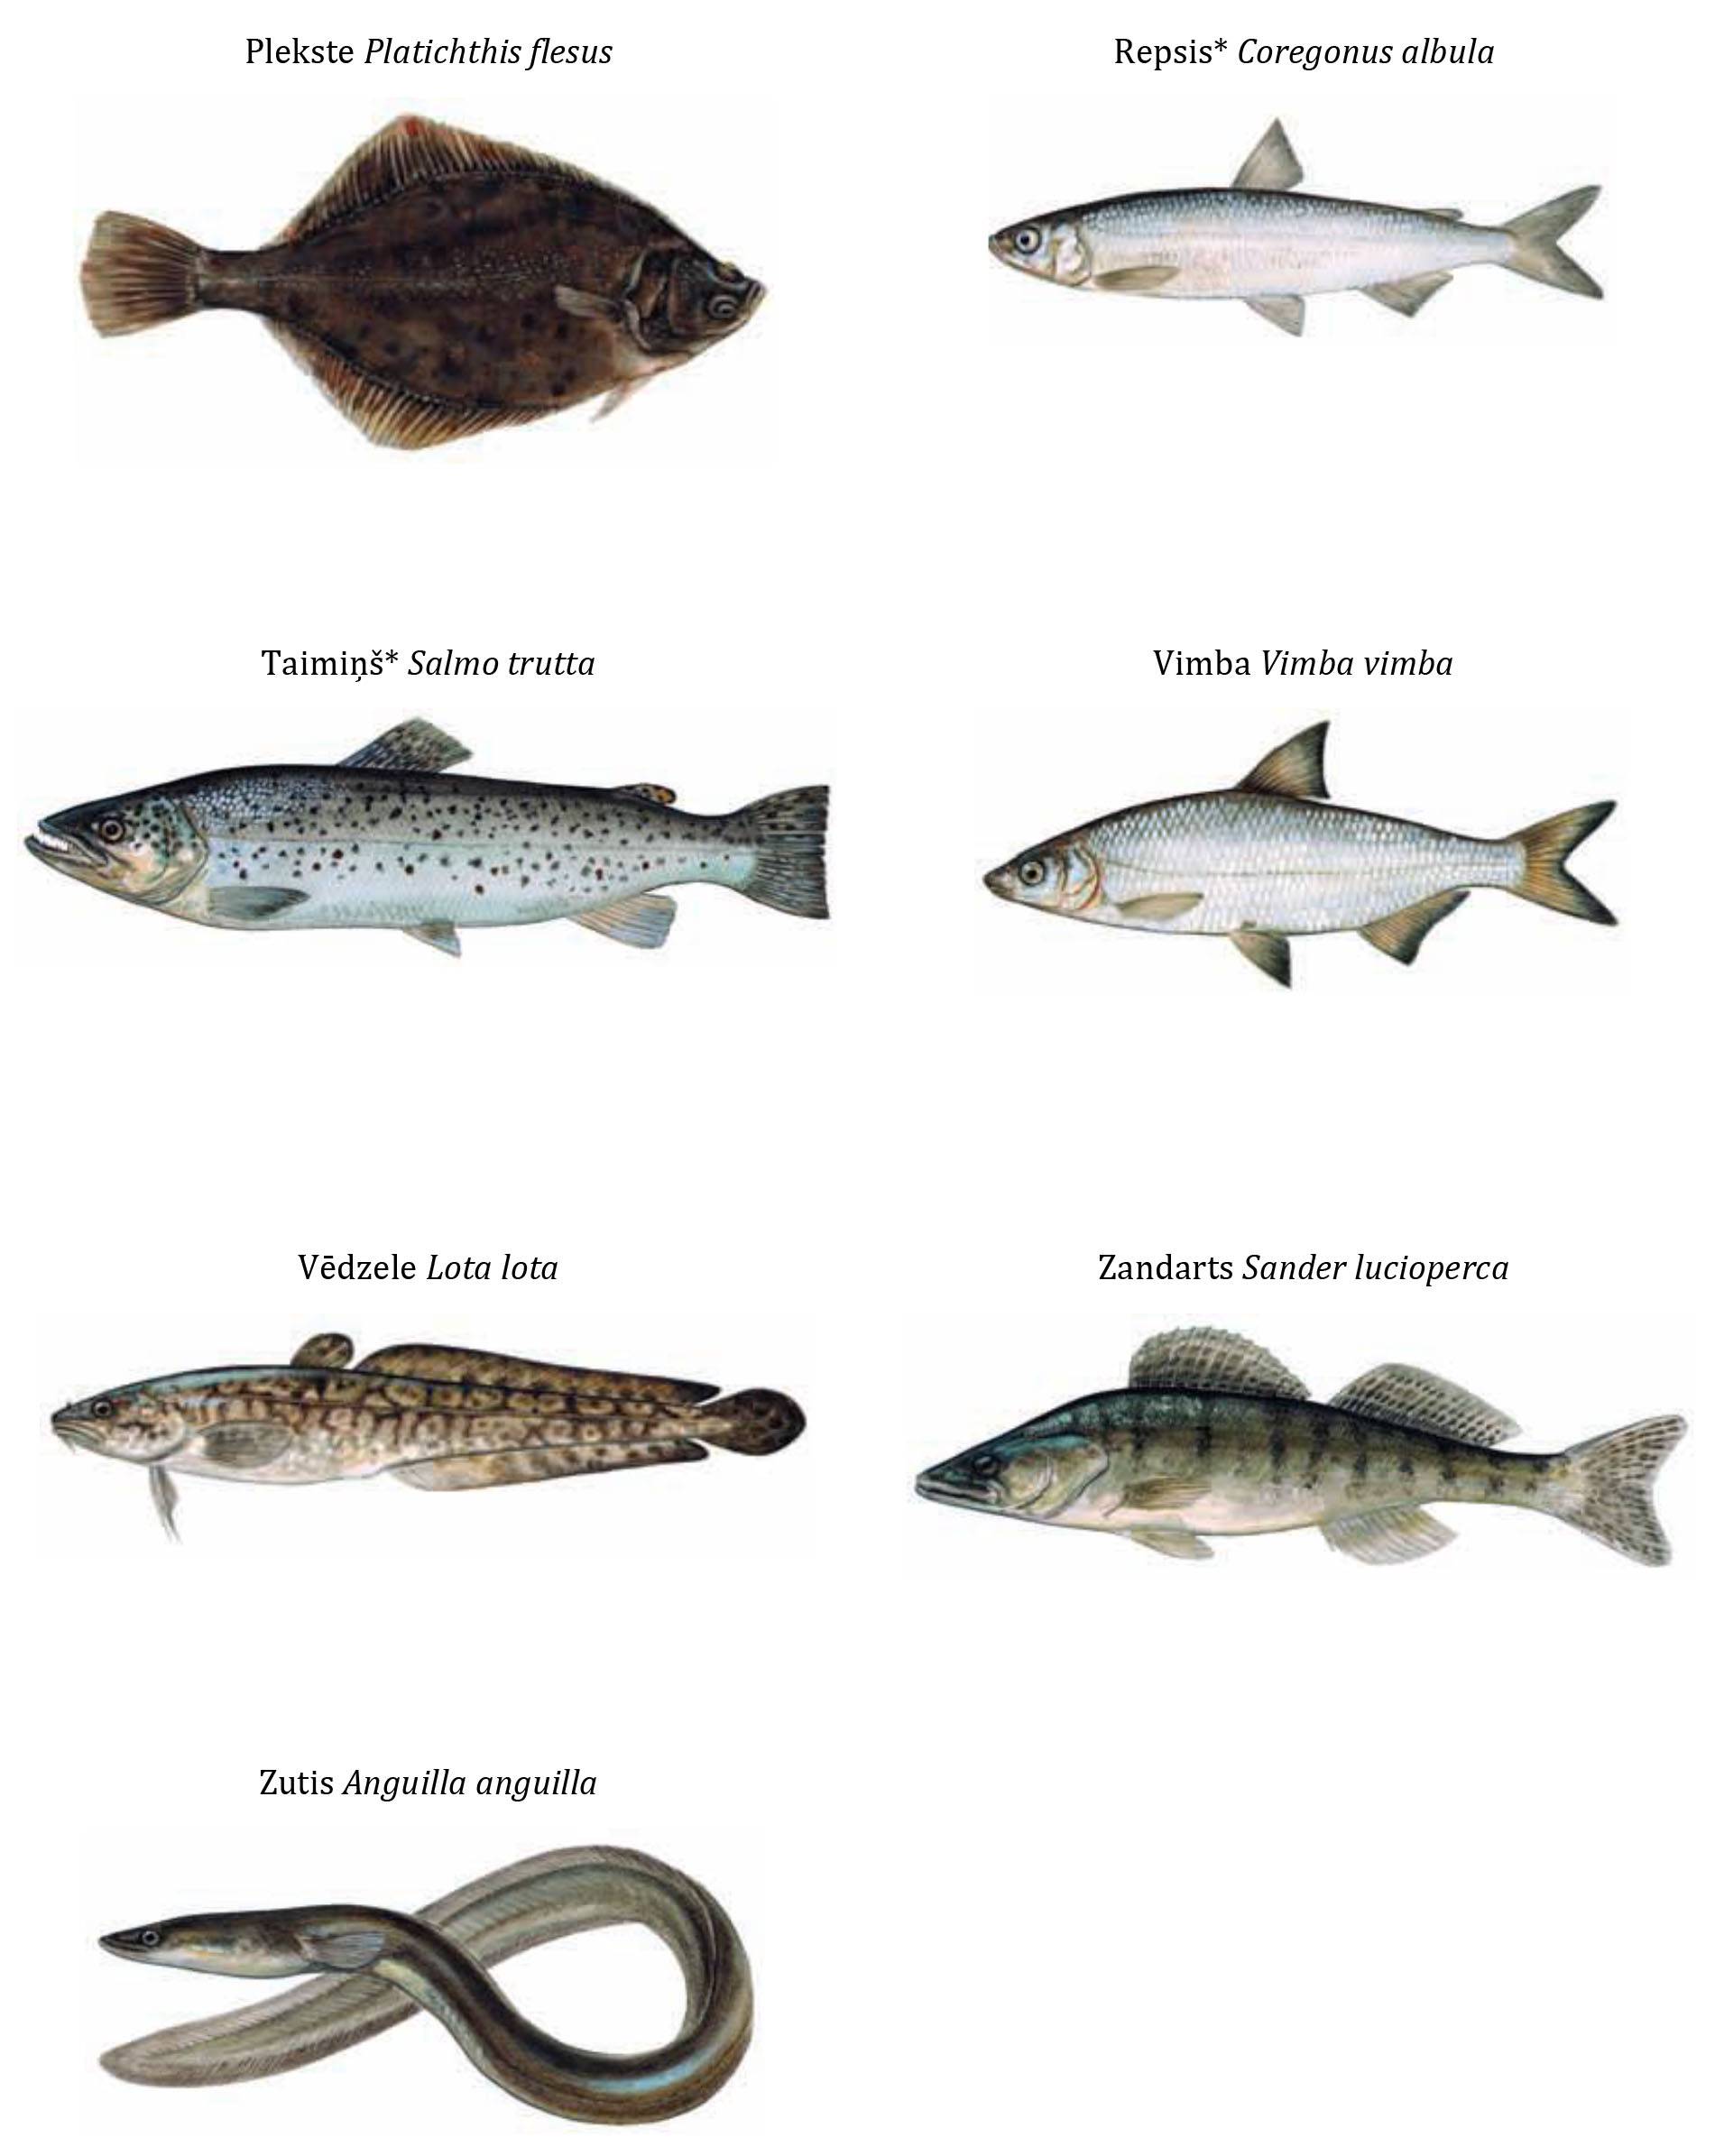 Барабулька - морская рыба, описание и фото